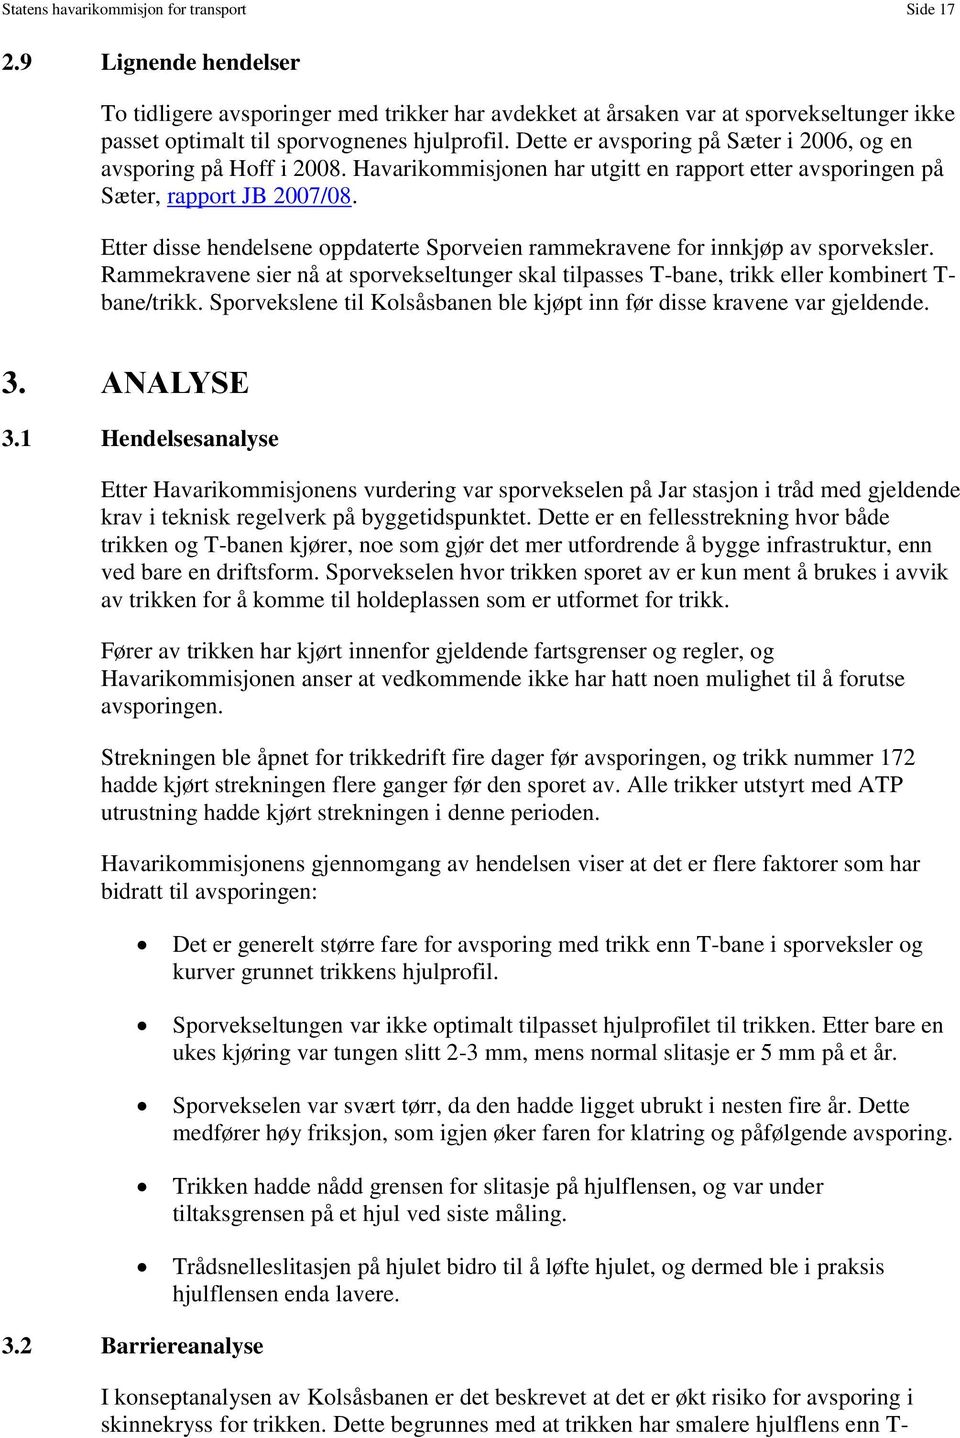 Dette er avsporing på Sæter i 2006, og en avsporing på Hoff i 2008. Havarikommisjonen har utgitt en rapport etter avsporingen på Sæter, rapport JB 2007/08.